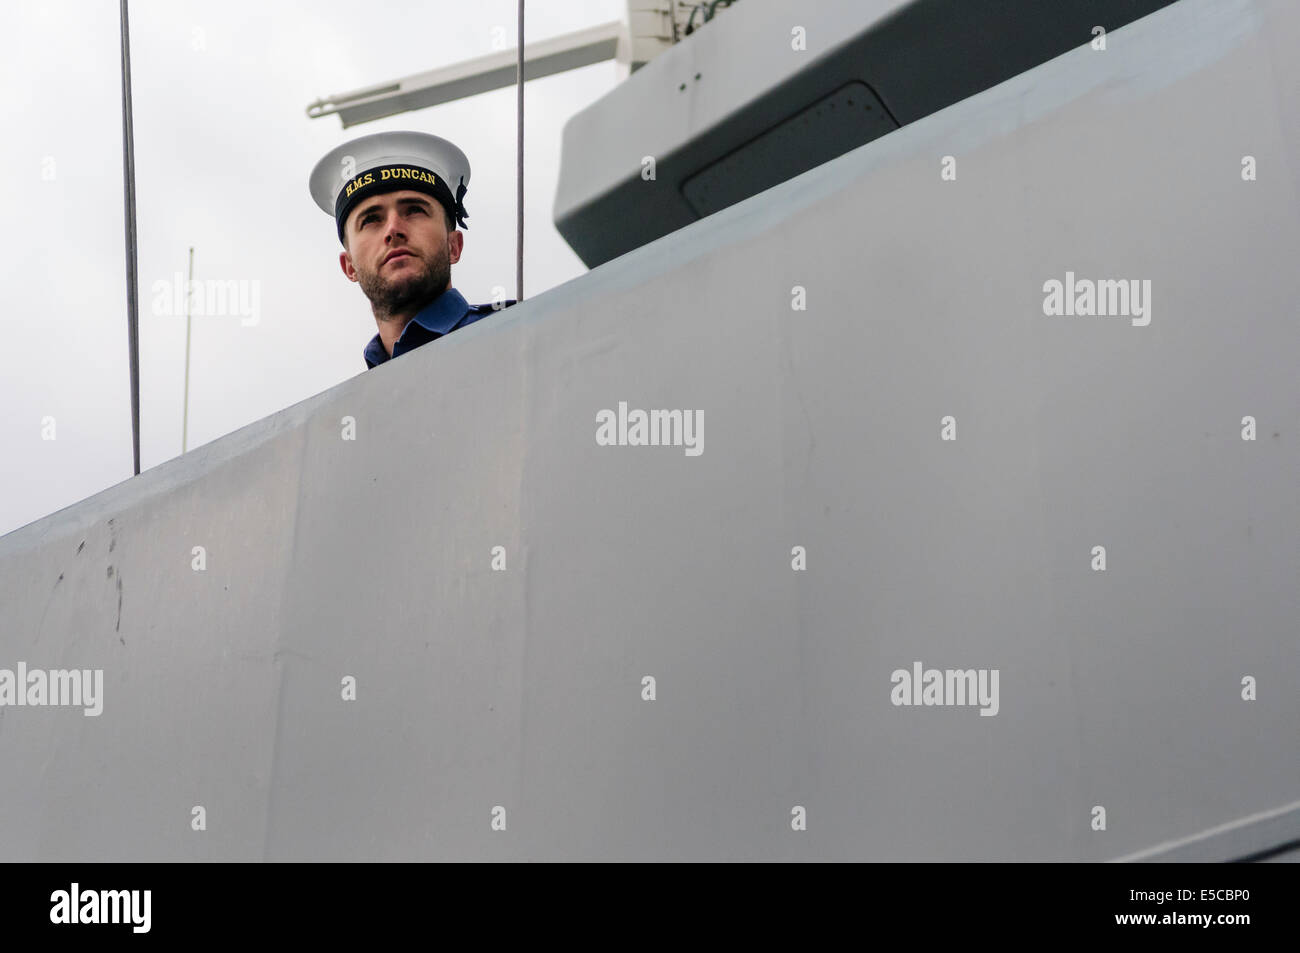 Belfast, Irlande du Nord. 26/07/2014 - Un marin ressemble à partir de la tourelle du type 45 destroyer HMS Duncan Crédit : Stephen Barnes/Alamy Live News Banque D'Images